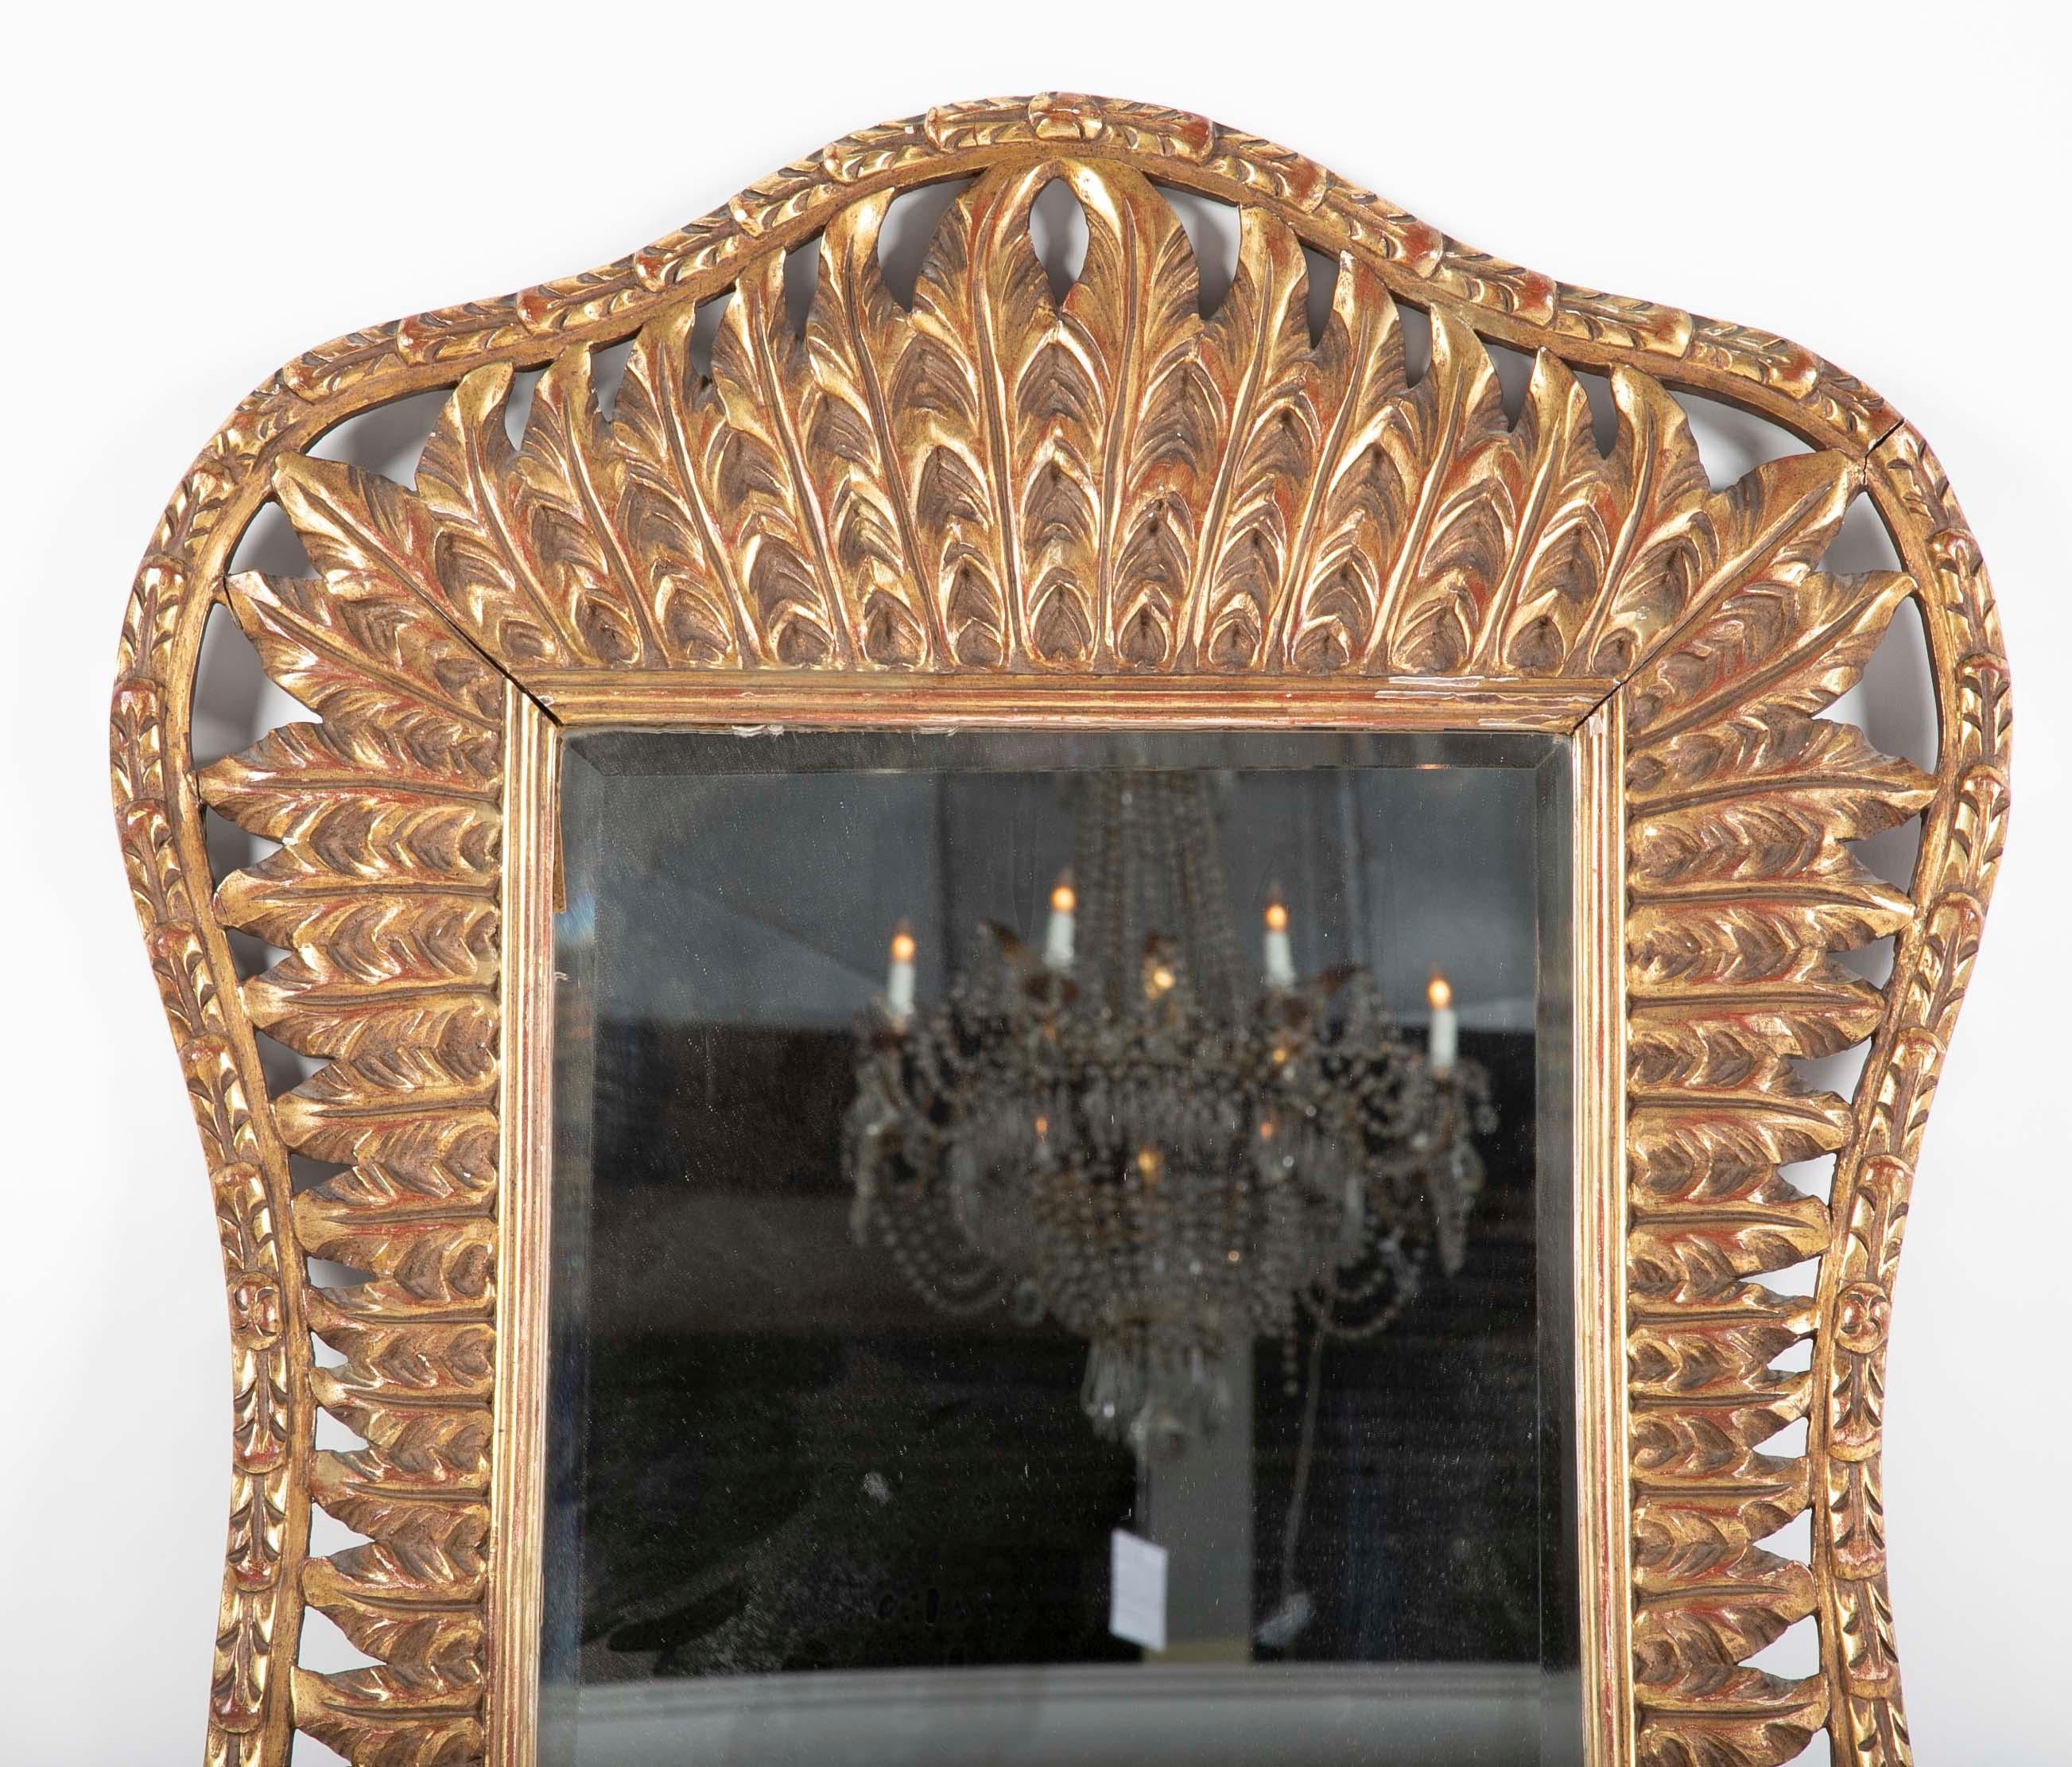 Miroir de fantaisie en plumes sculptées et dorées signé Jansen. Estampillé 